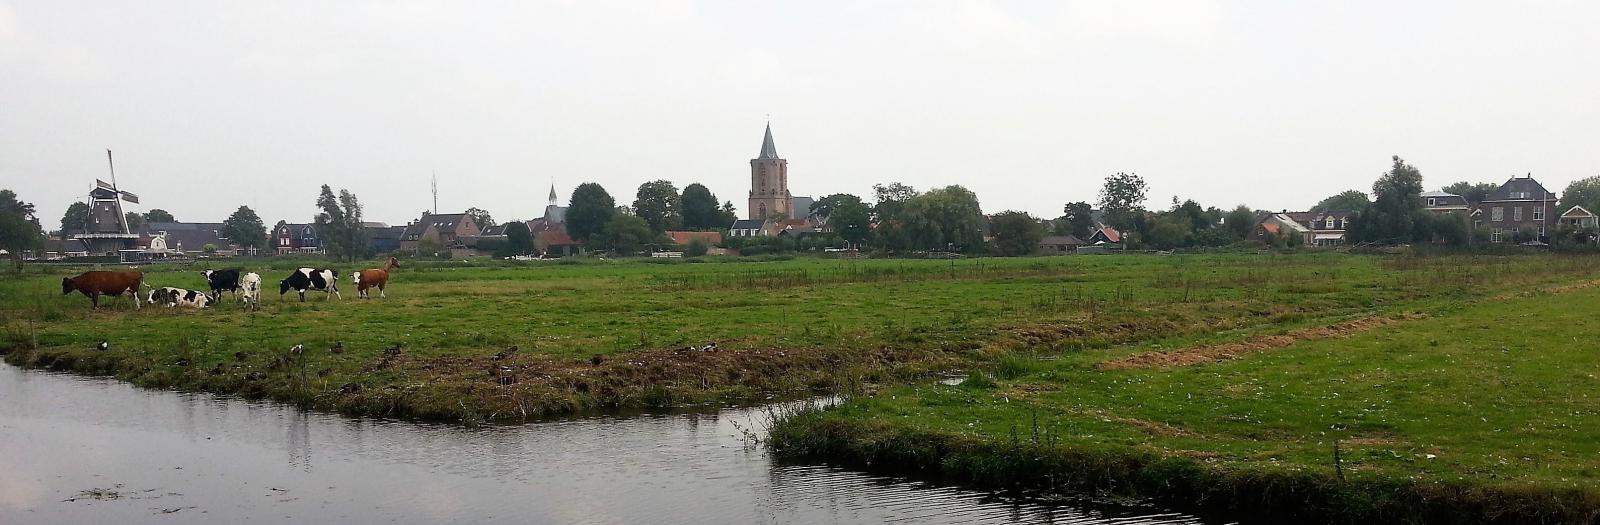 Countryside in Bunschoten